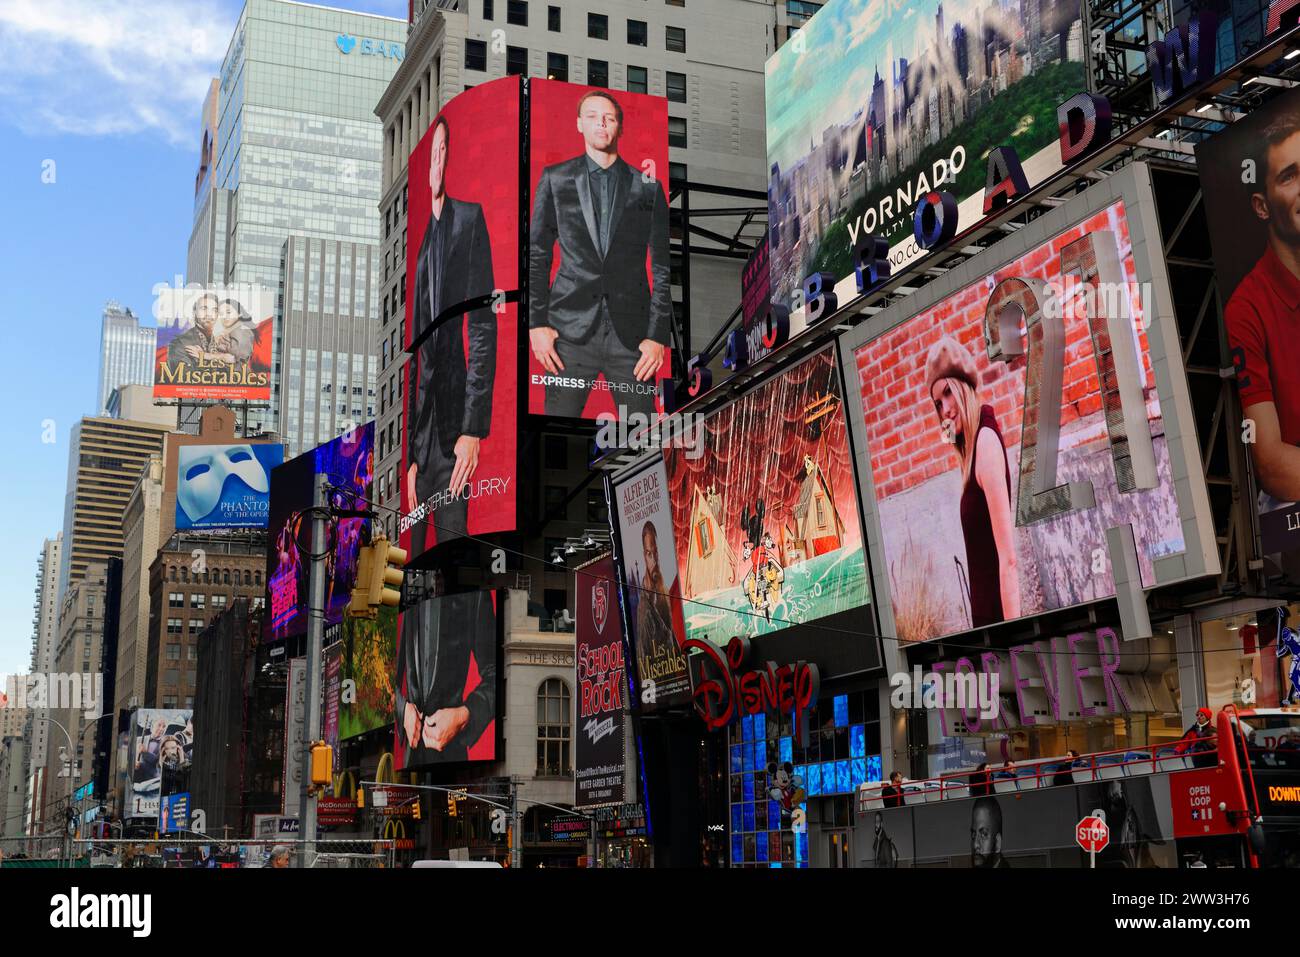 Vue des panneaux animés de Times Square, Manhattan, New York City, New York, USA, Amérique du Nord Banque D'Images